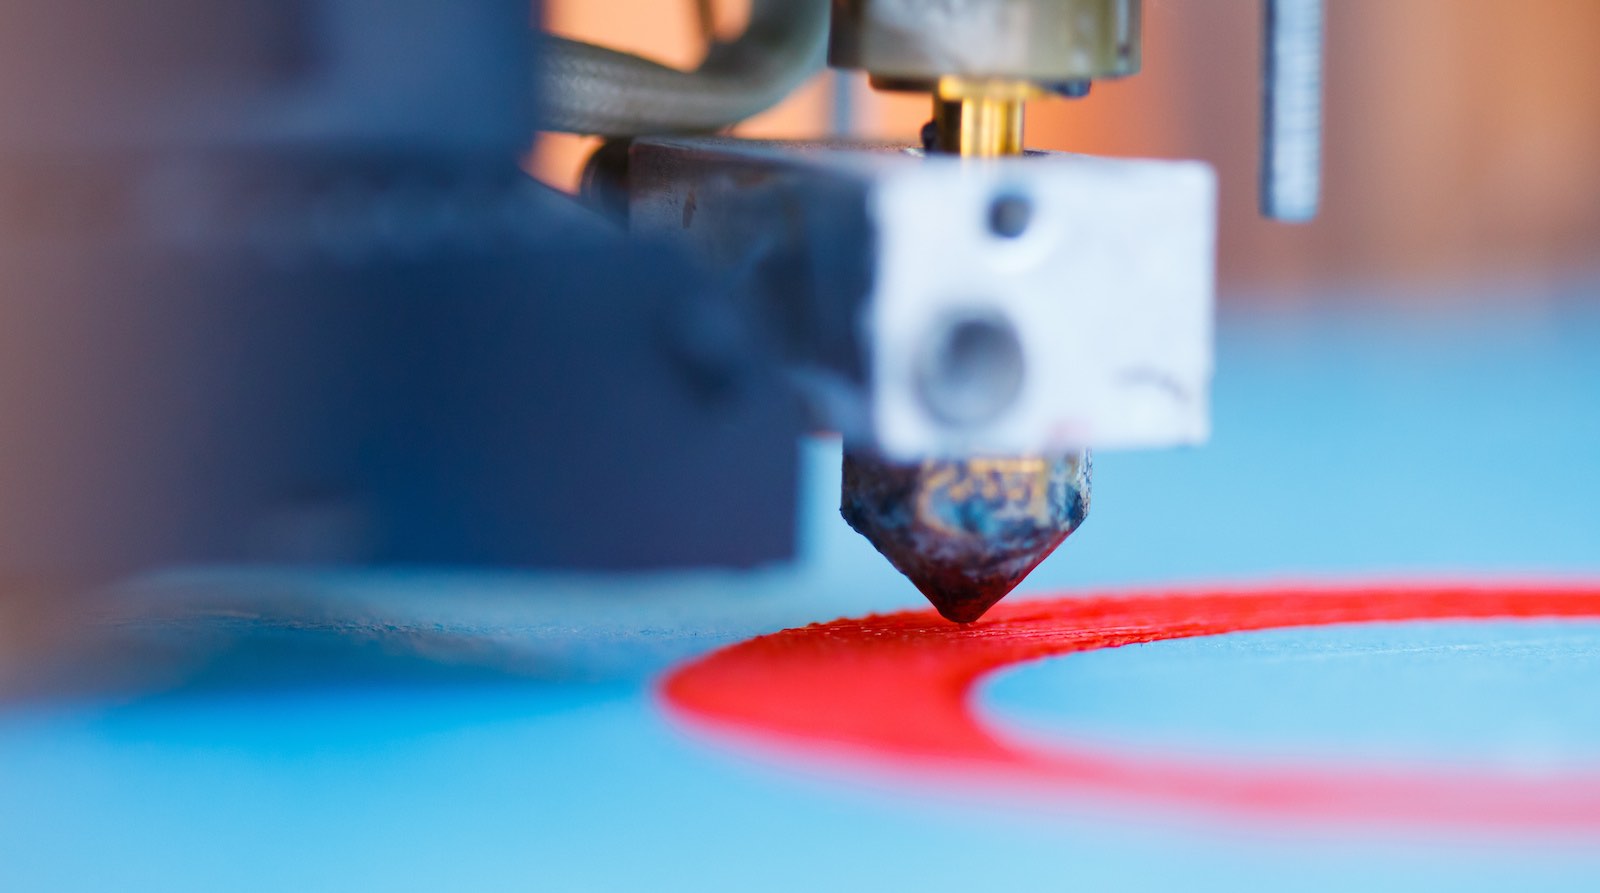 阿科玛建立3D打印商业平台